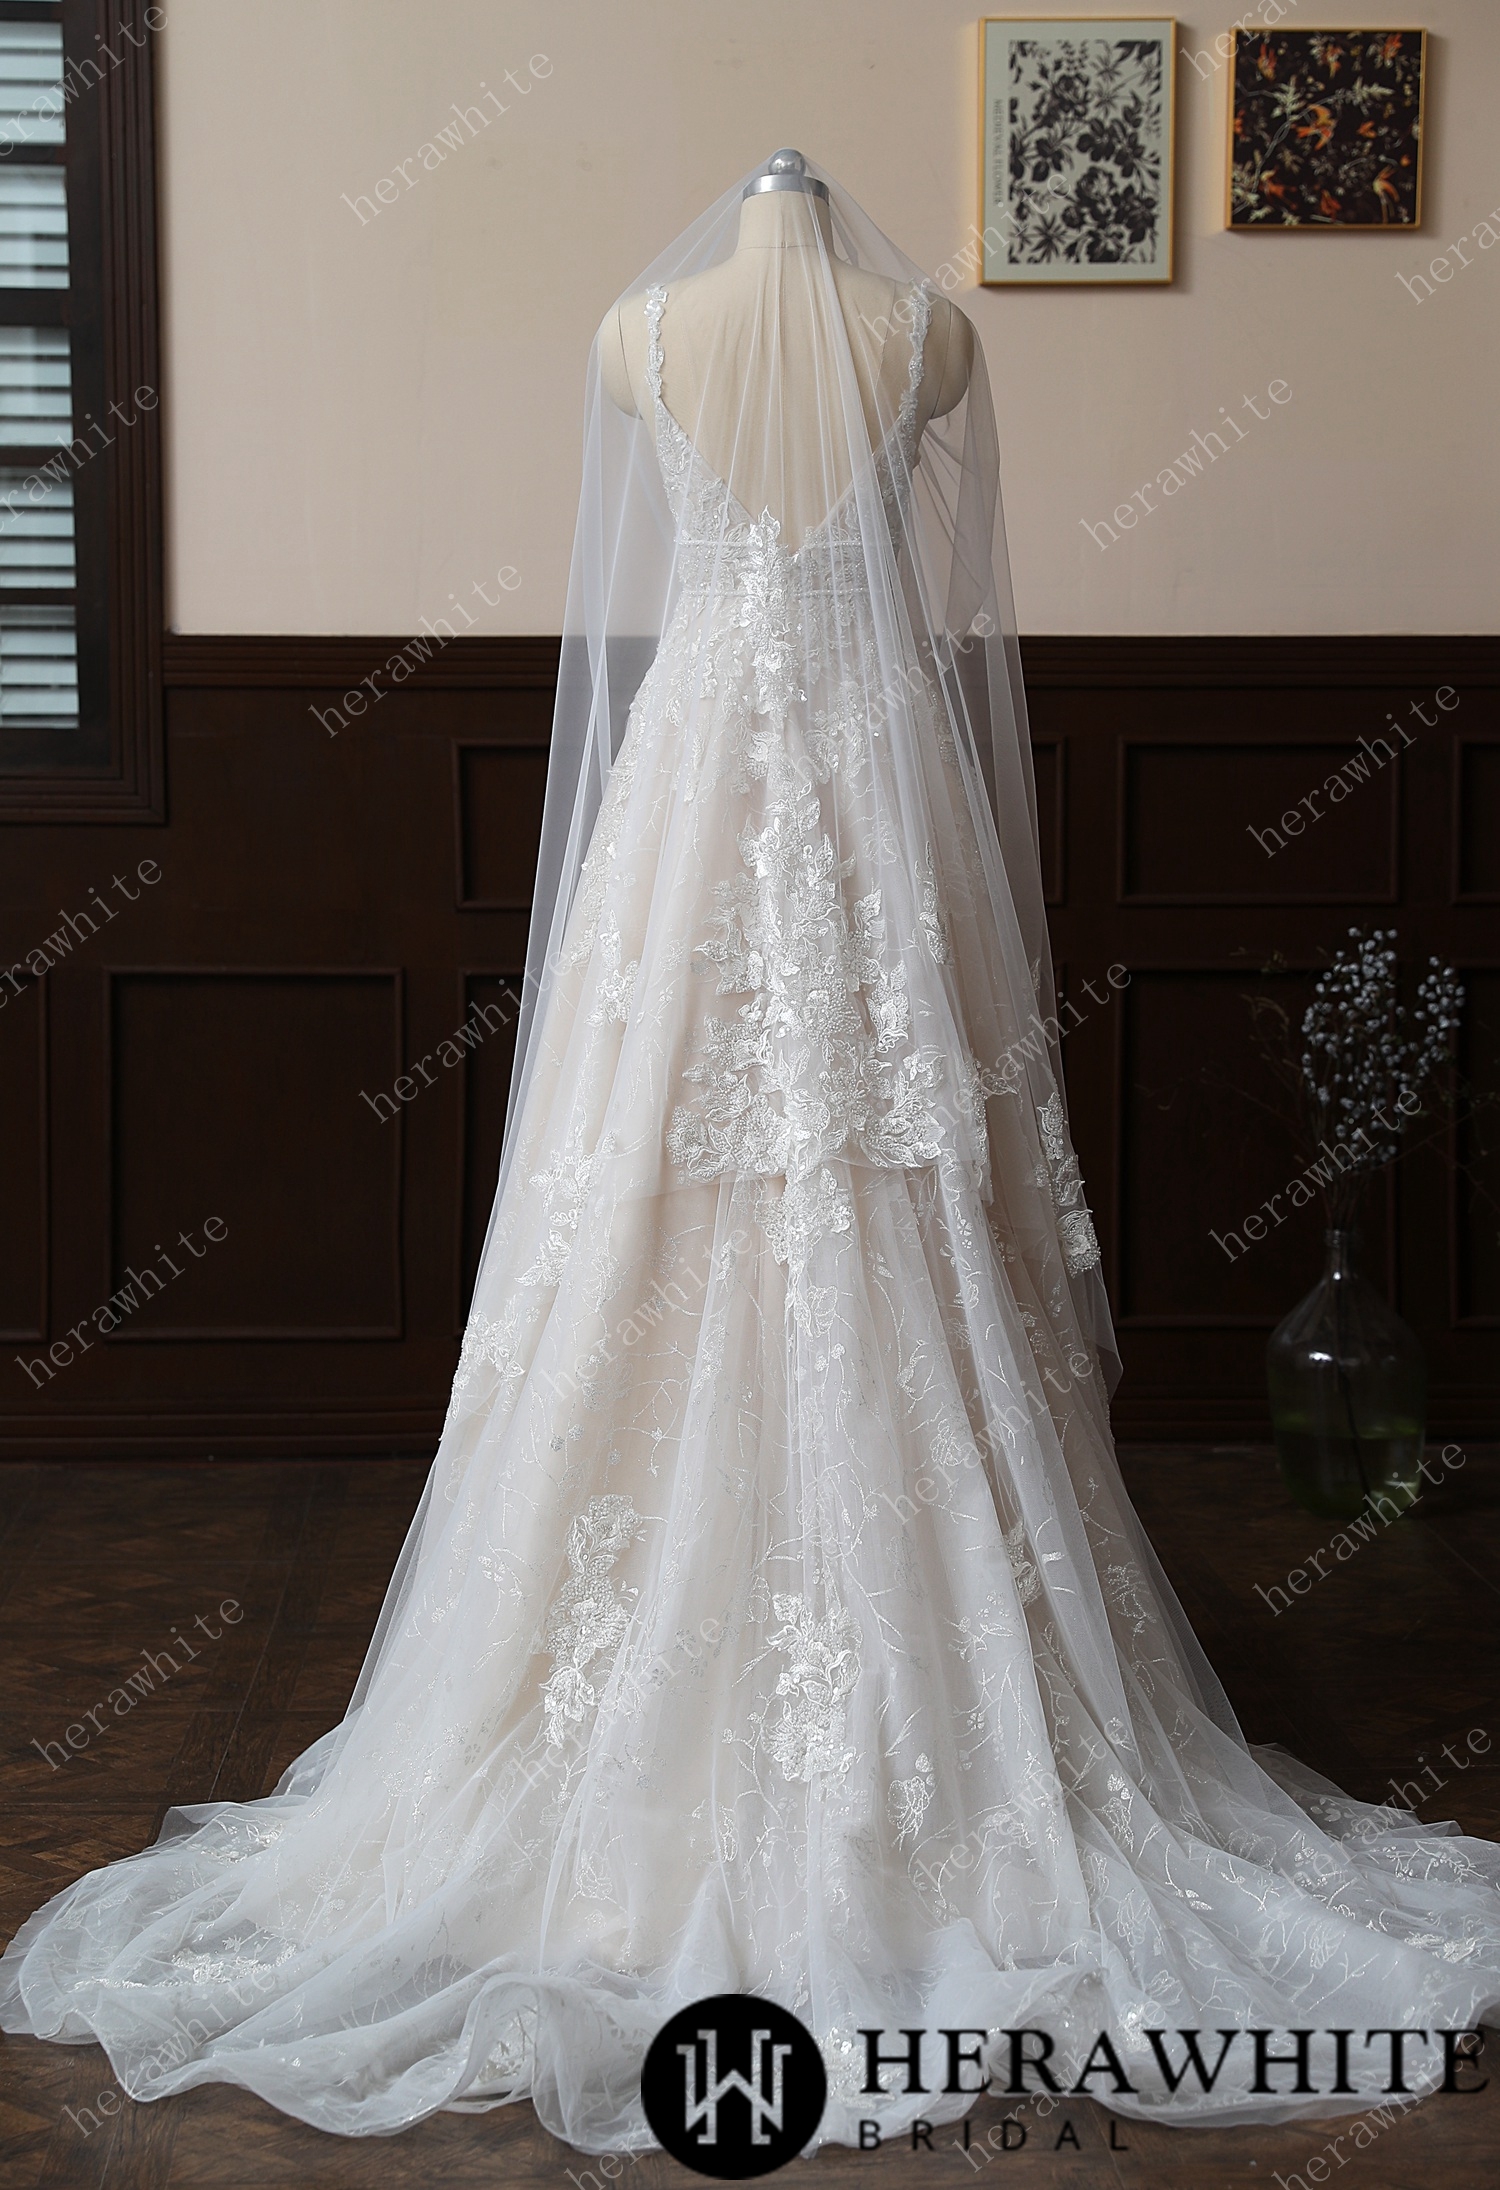 Embellished Floral Fingertip-Length Lace Bridal Veil